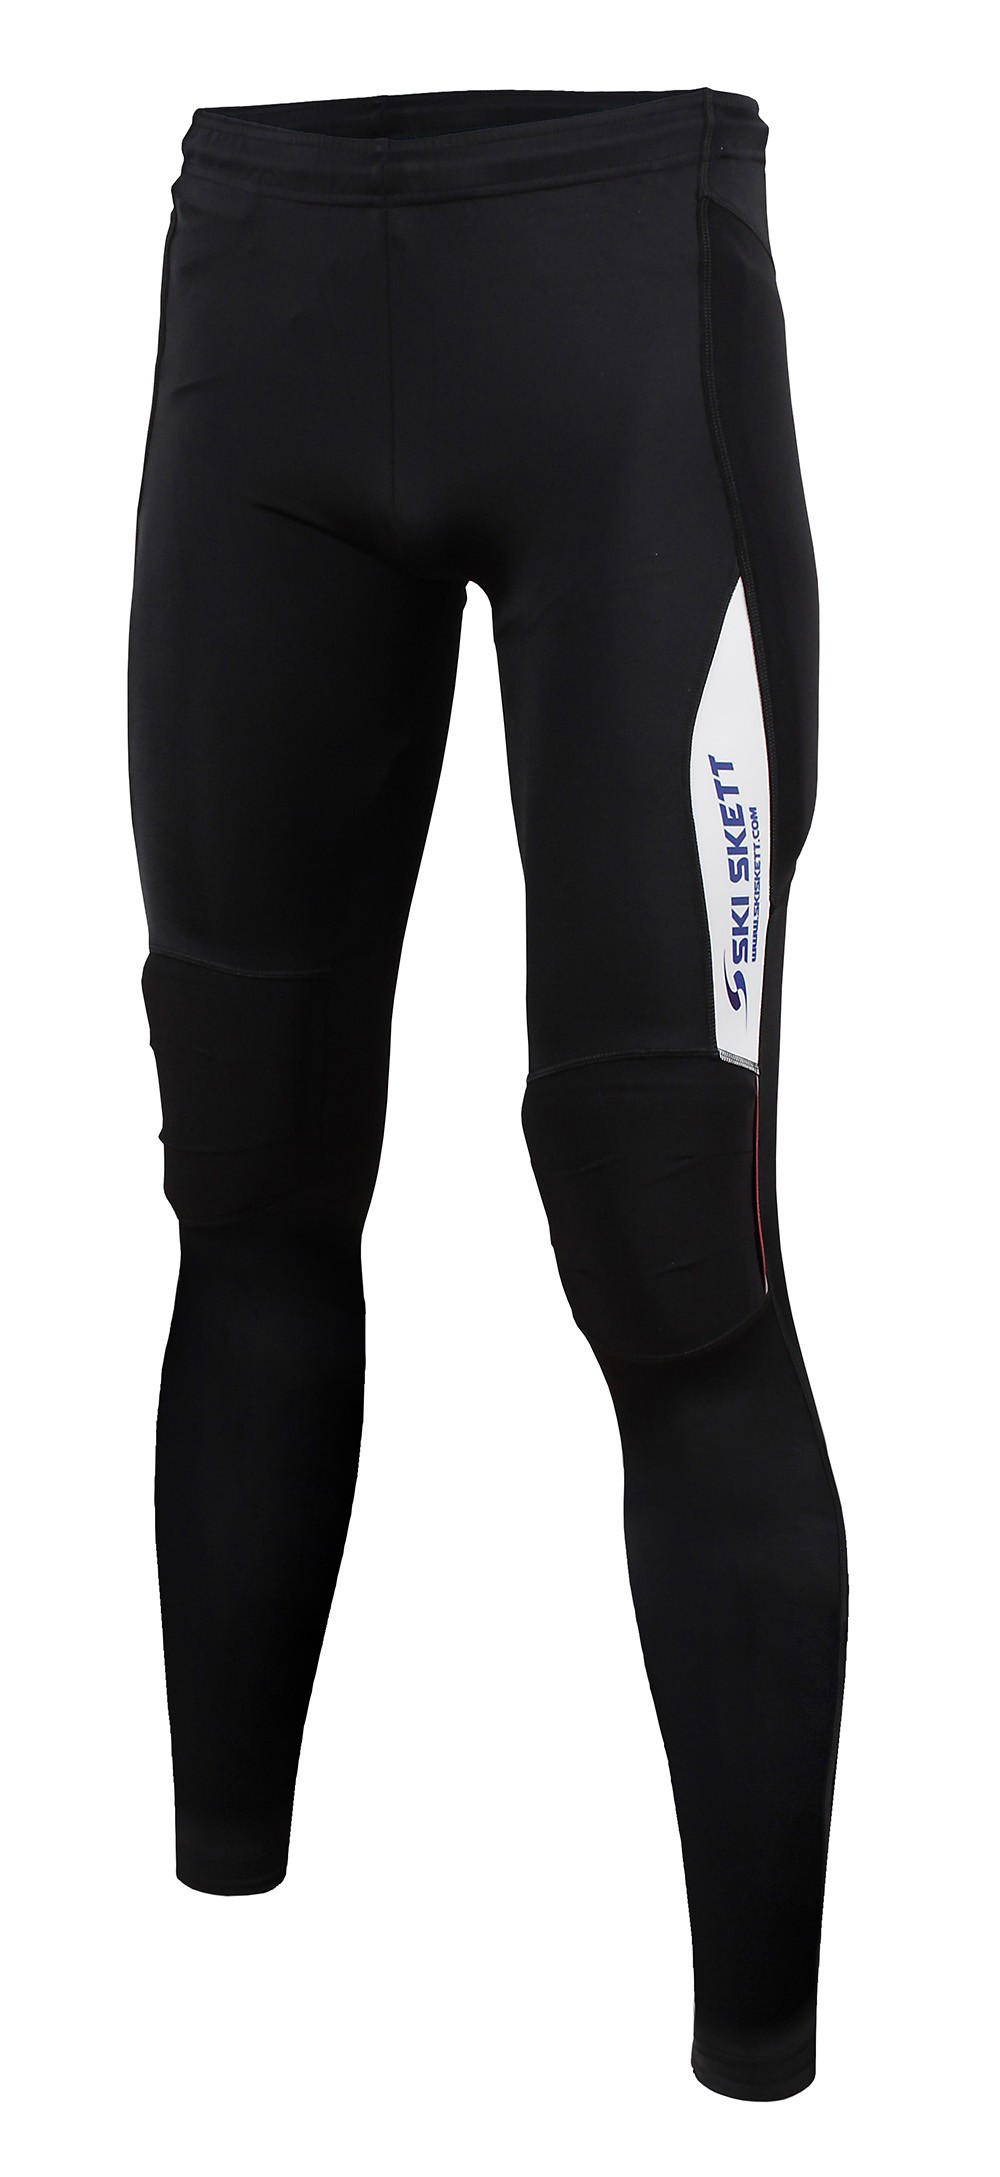 Ski Skett Abbigliamento per Skiroll e Roller Ski, Pantalone con protezioni, fronte